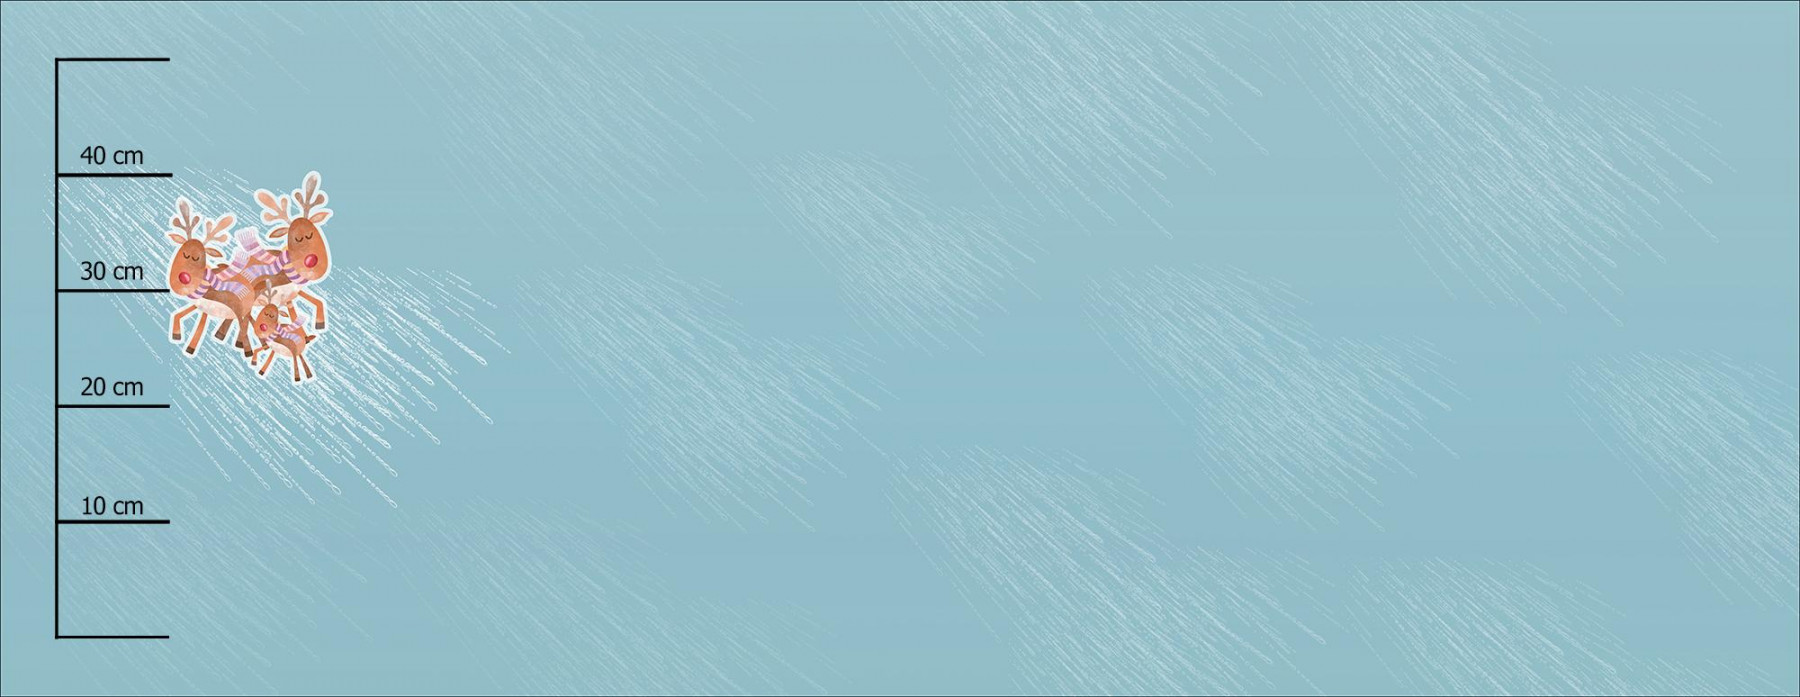 RODINA SOBŮ (VÁNOČNÍ SOBI) - panoramic panel teplákovina